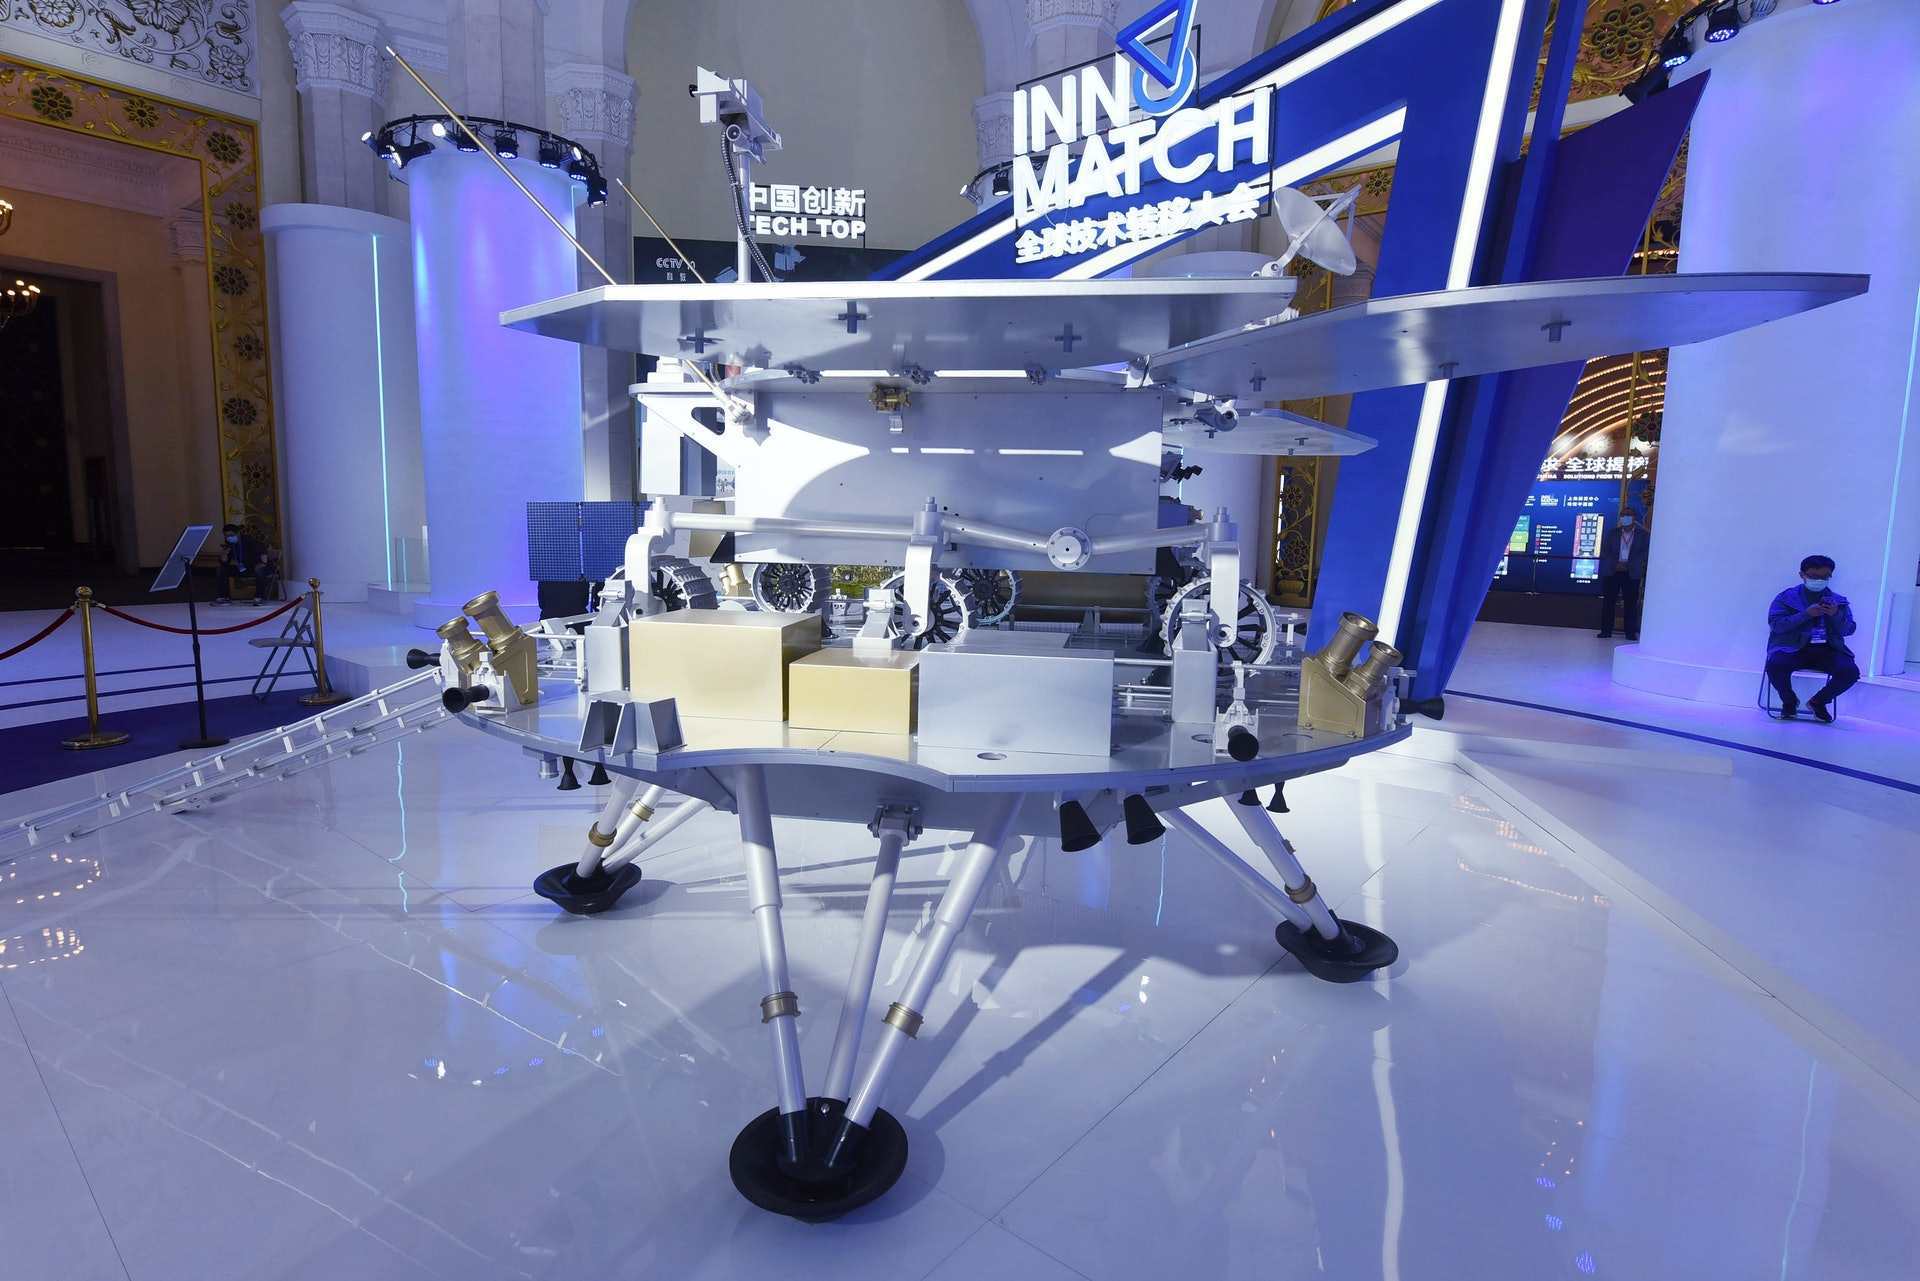 局为中国首辆火星车展开的征名活动,在今年初评选出了"弘毅","麒麟","